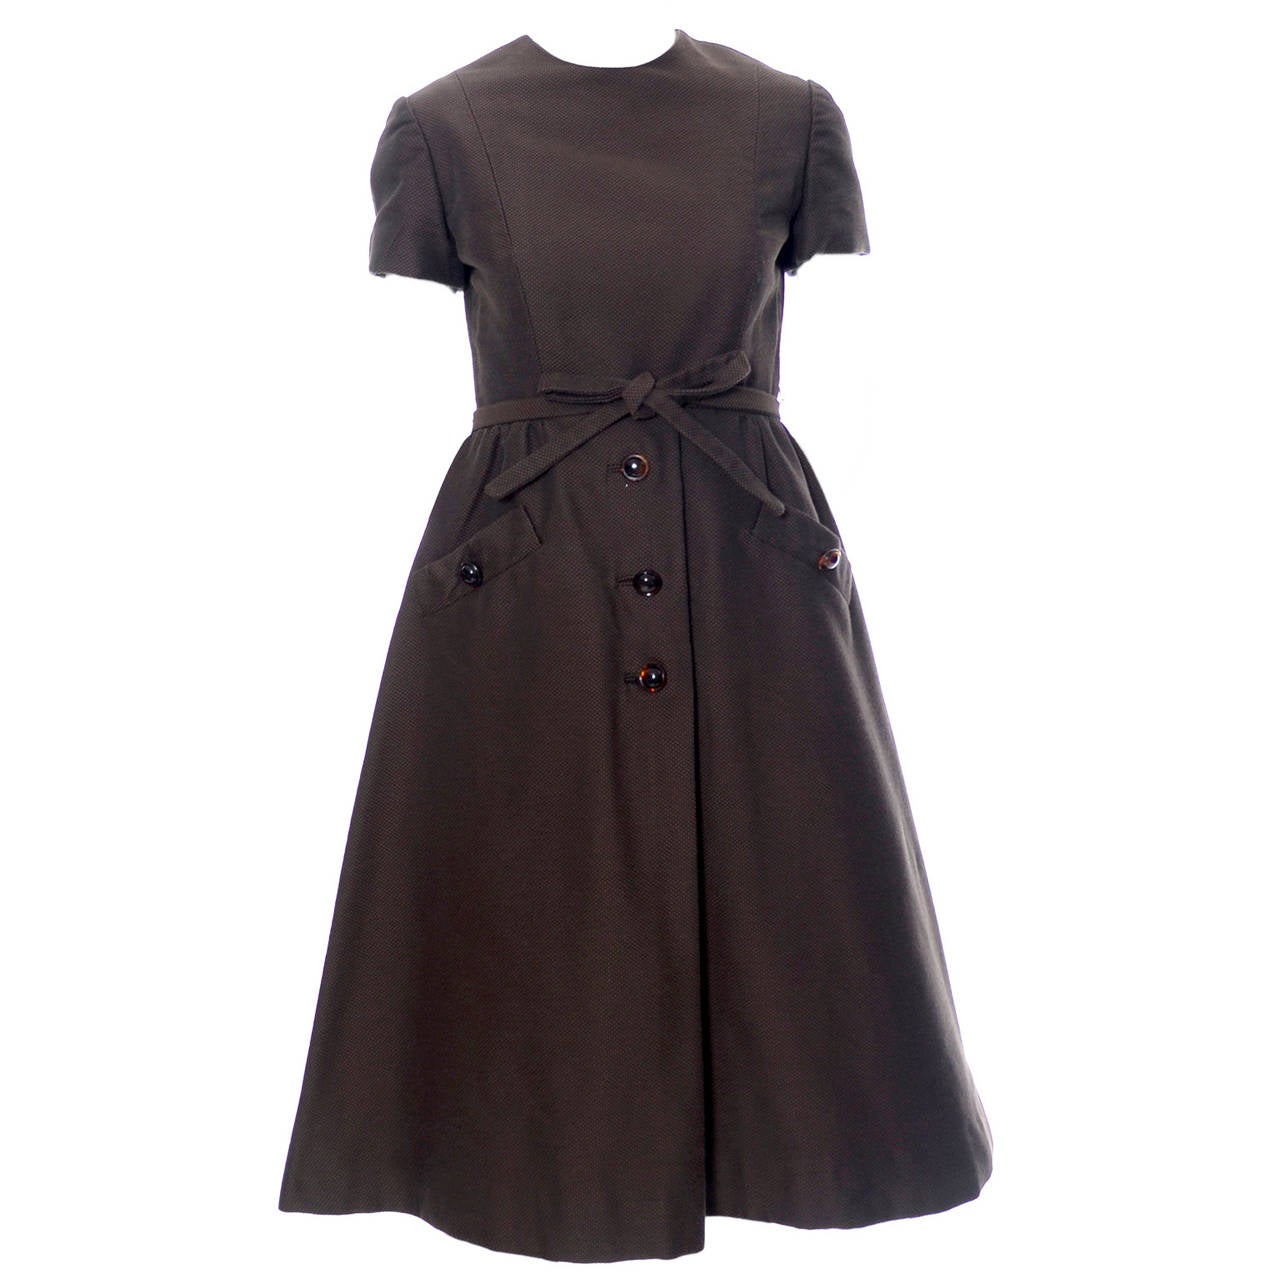 Chocolate Brown Geoffrey Beene 1960s Mod Vintage Dress Pockets Belt